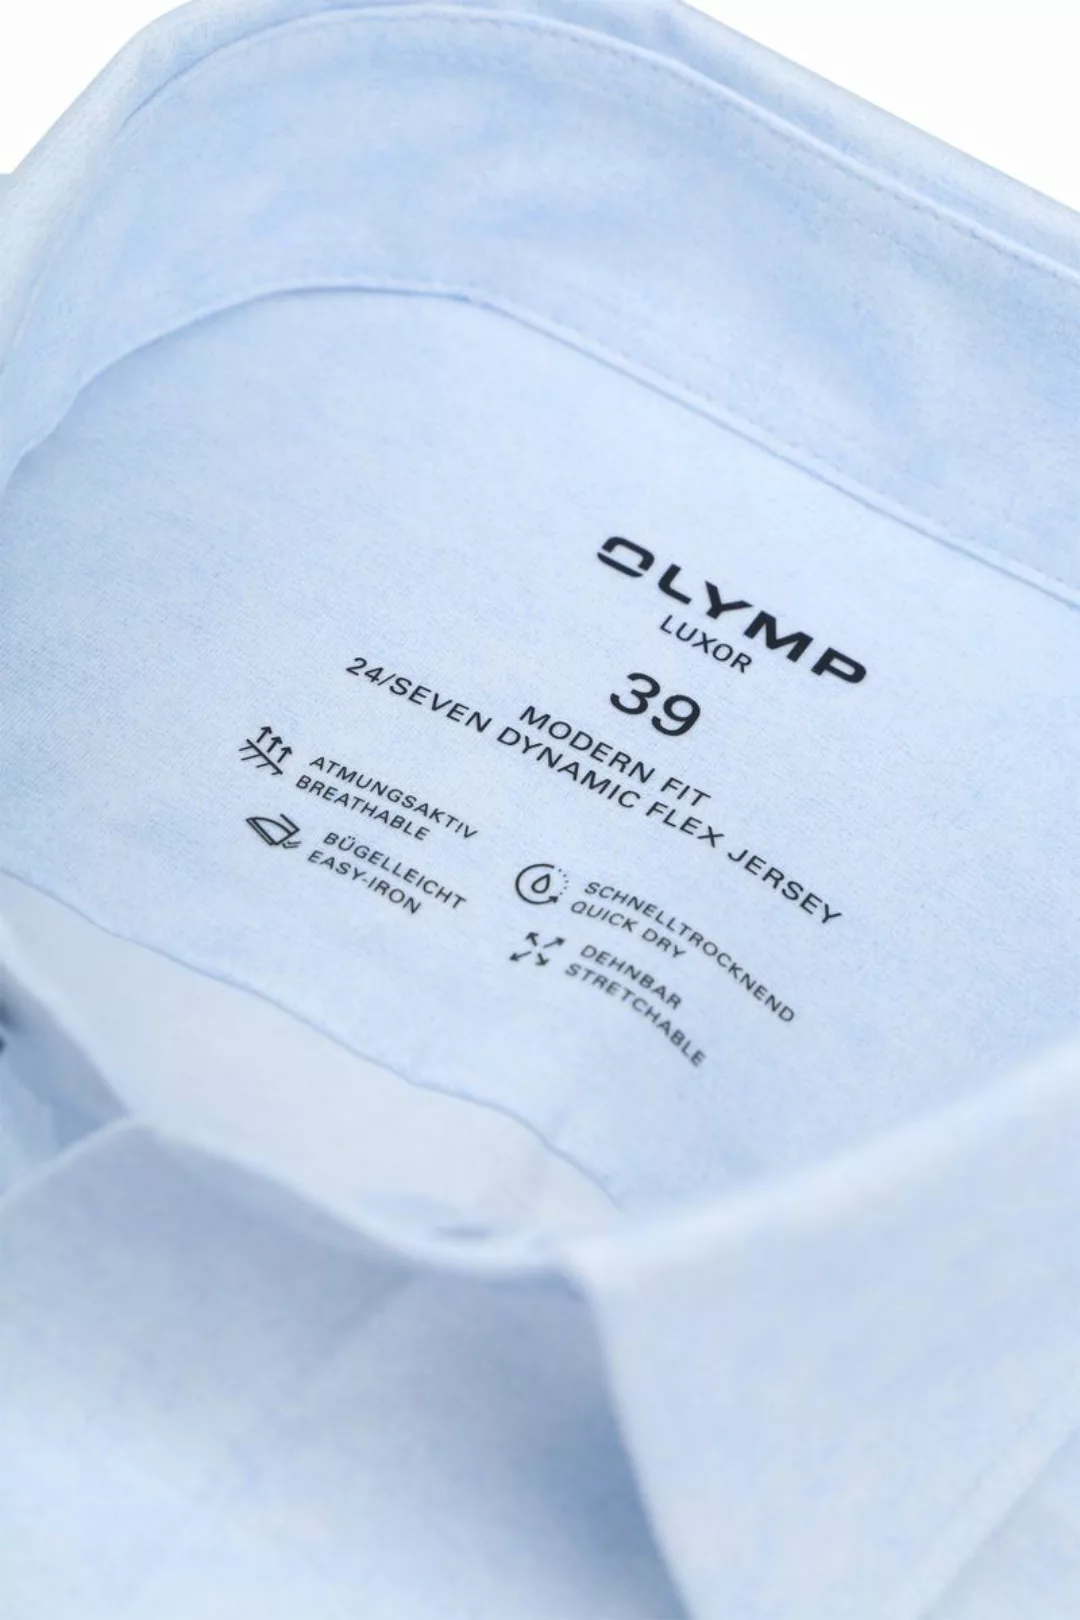 OLYMP Luxor Hemd Stretch Hellblau  - Größe 43 günstig online kaufen